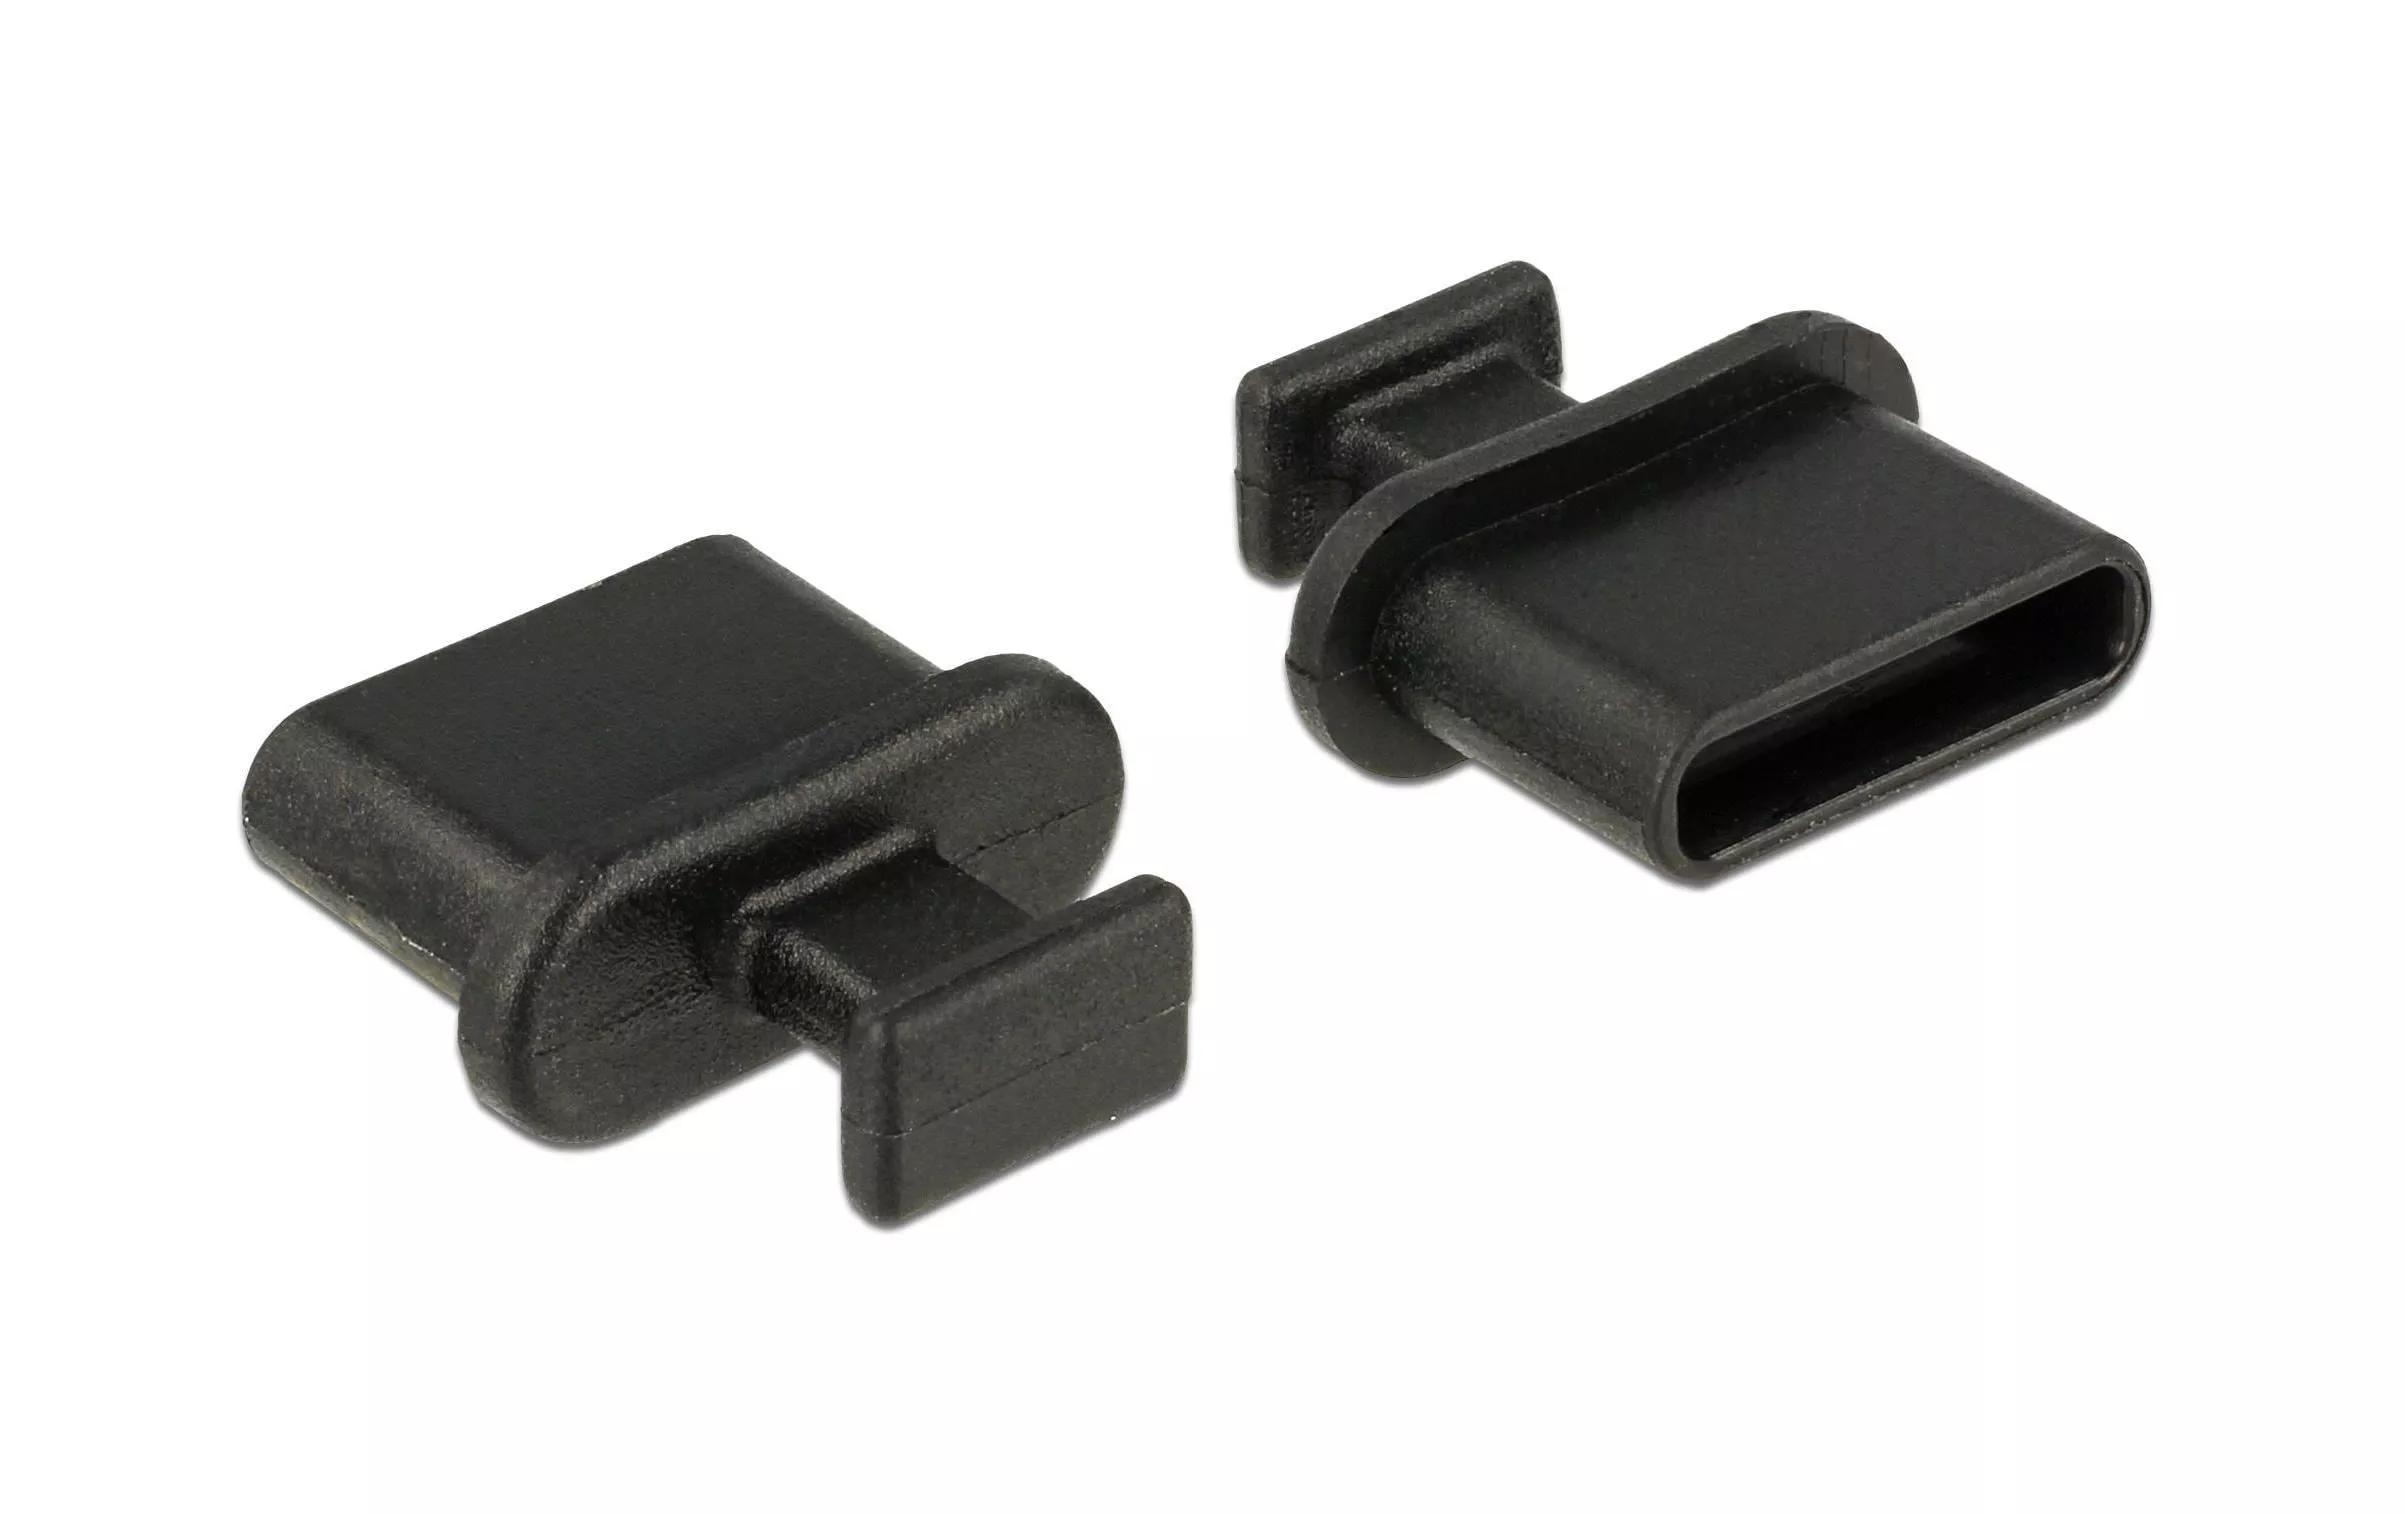 Spina fittizia/Copertura antipolvere USB-C 10 pezzi nero con impugnatura